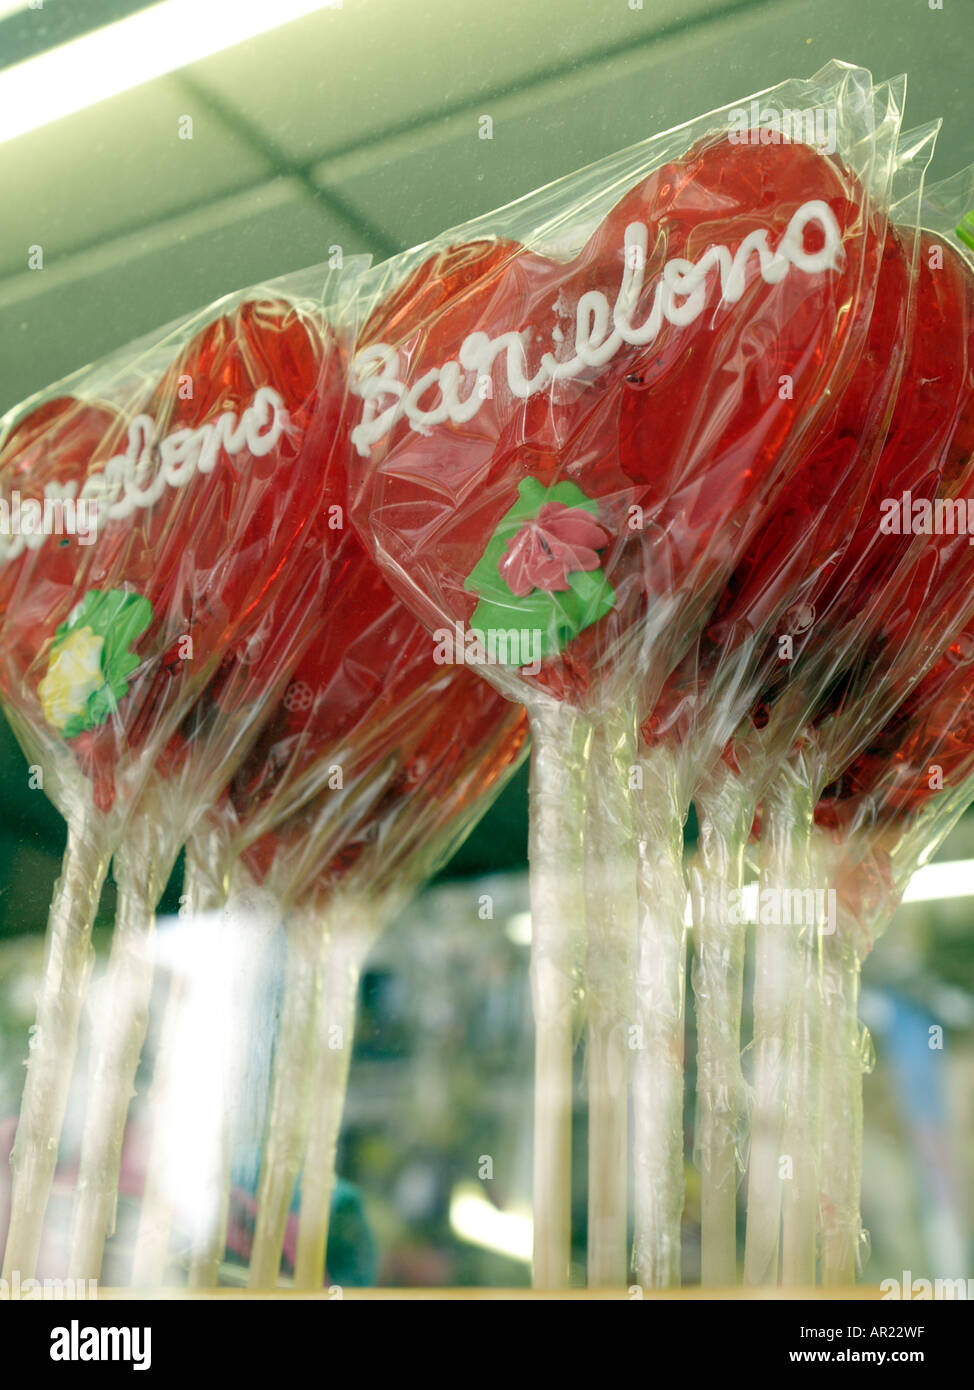 Heart shaped Lollipops with Barcelona written on it in sweet shop window Stock Photo